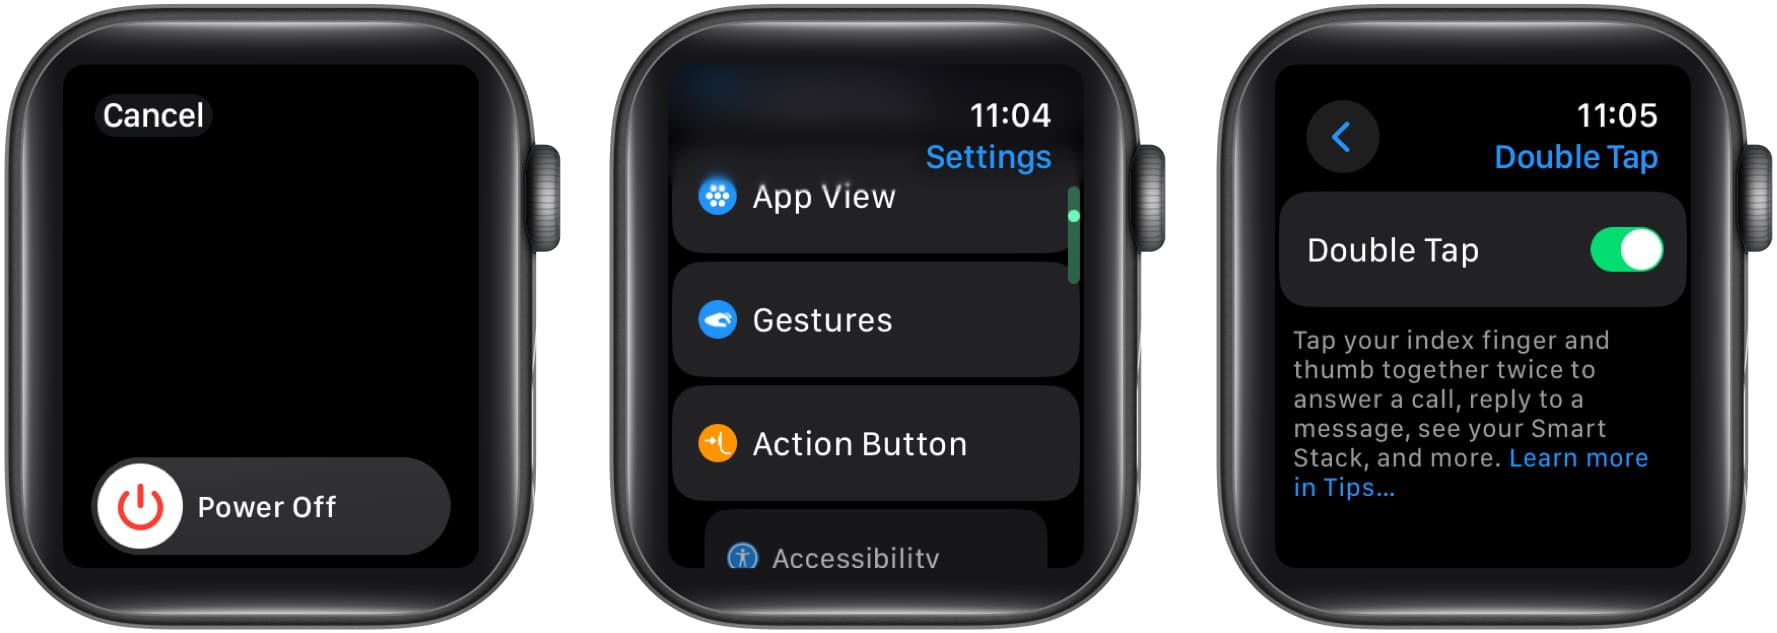 Restart Apple Watch, Enable Double Tap